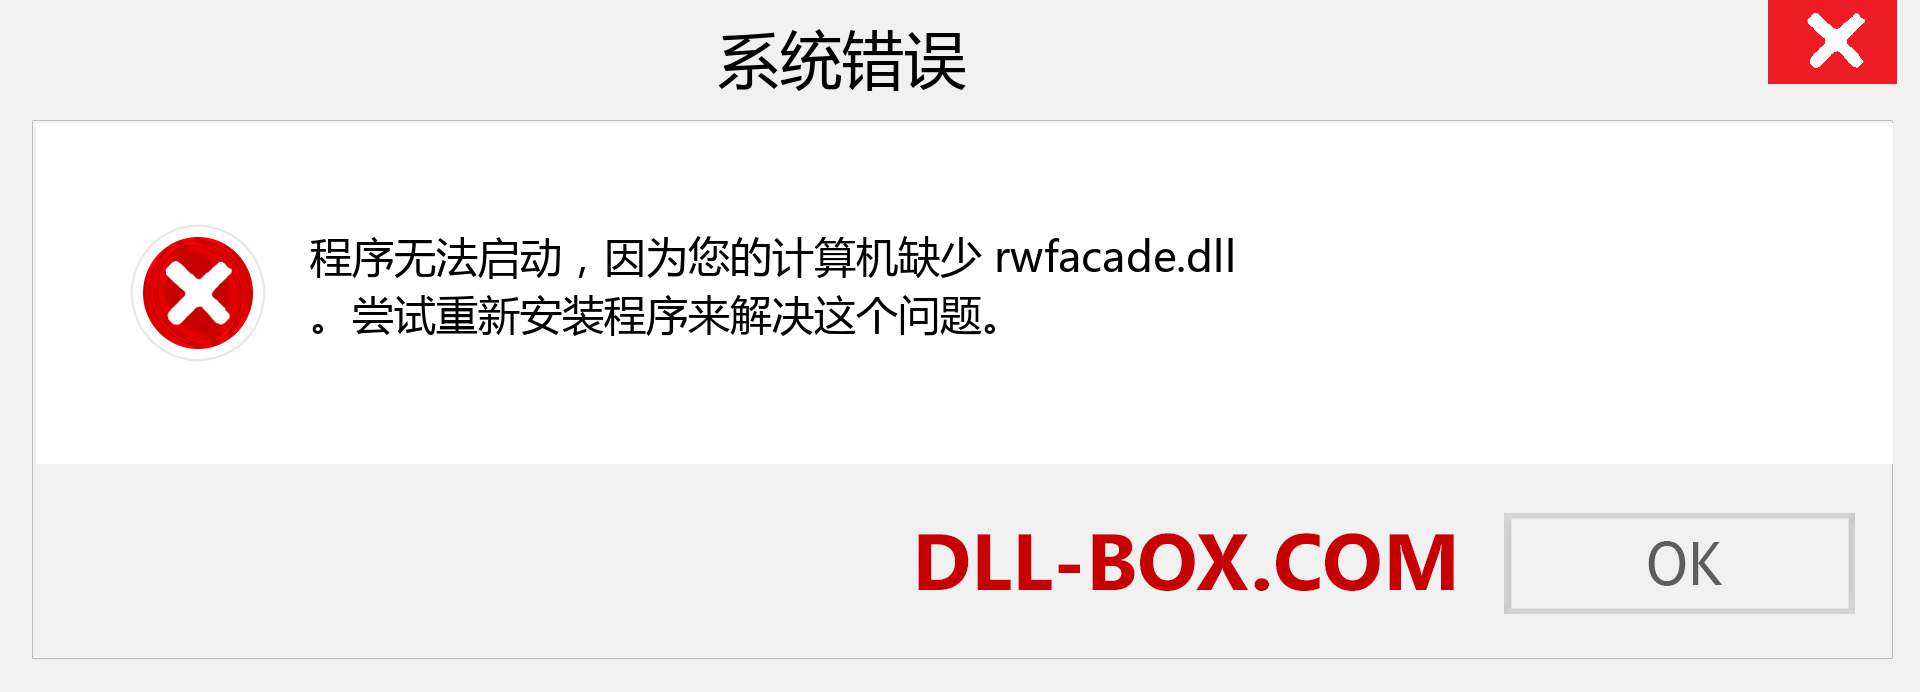 rwfacade.dll 文件丢失？。 适用于 Windows 7、8、10 的下载 - 修复 Windows、照片、图像上的 rwfacade dll 丢失错误